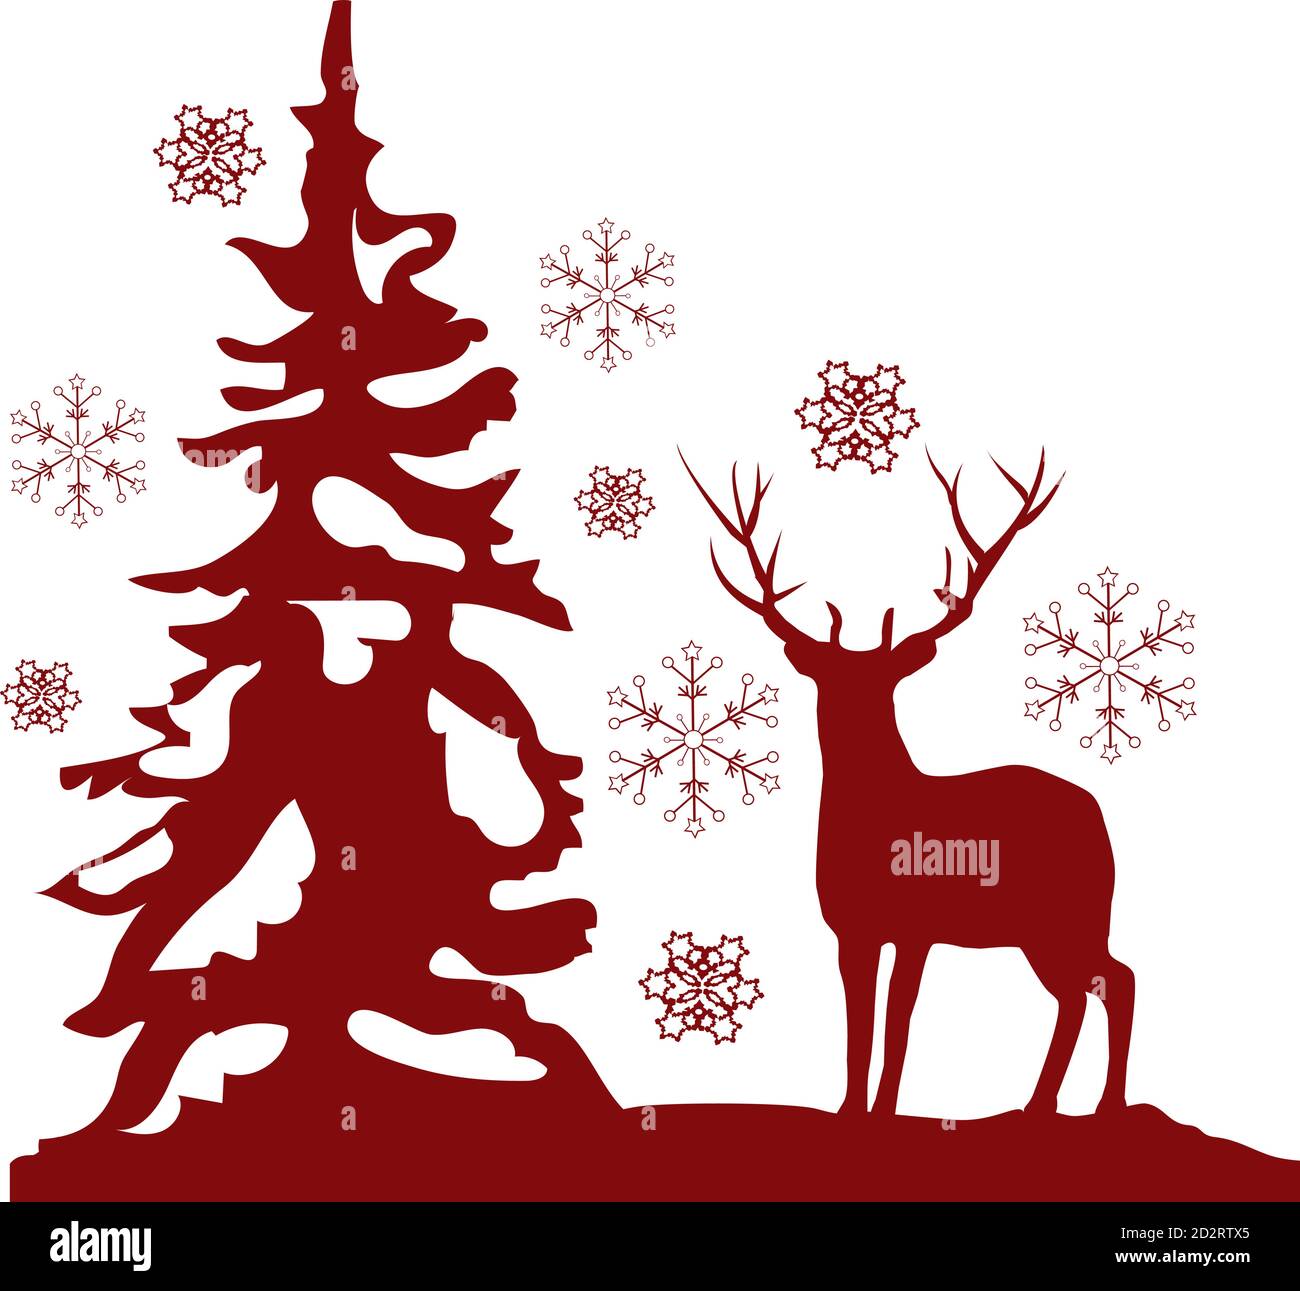 Illustrazione vettoriale della carta di Natale con un cervo rosso, un albero rosso e fiocchi di neve. Illustrazione Vettoriale